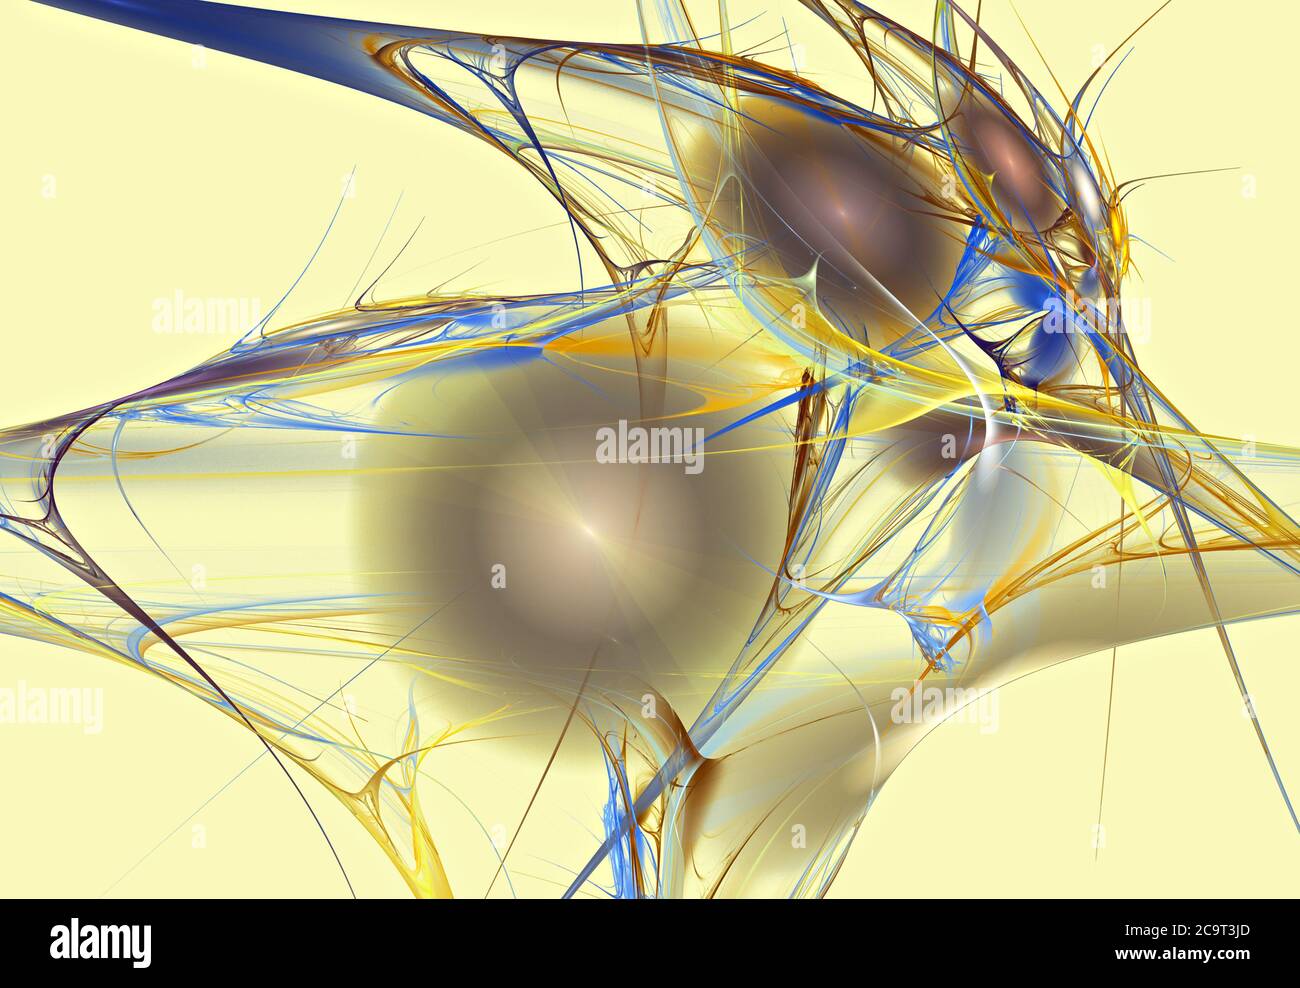 Conception numérique de l'art fractal, particules électroniques sur fond jaune Banque D'Images